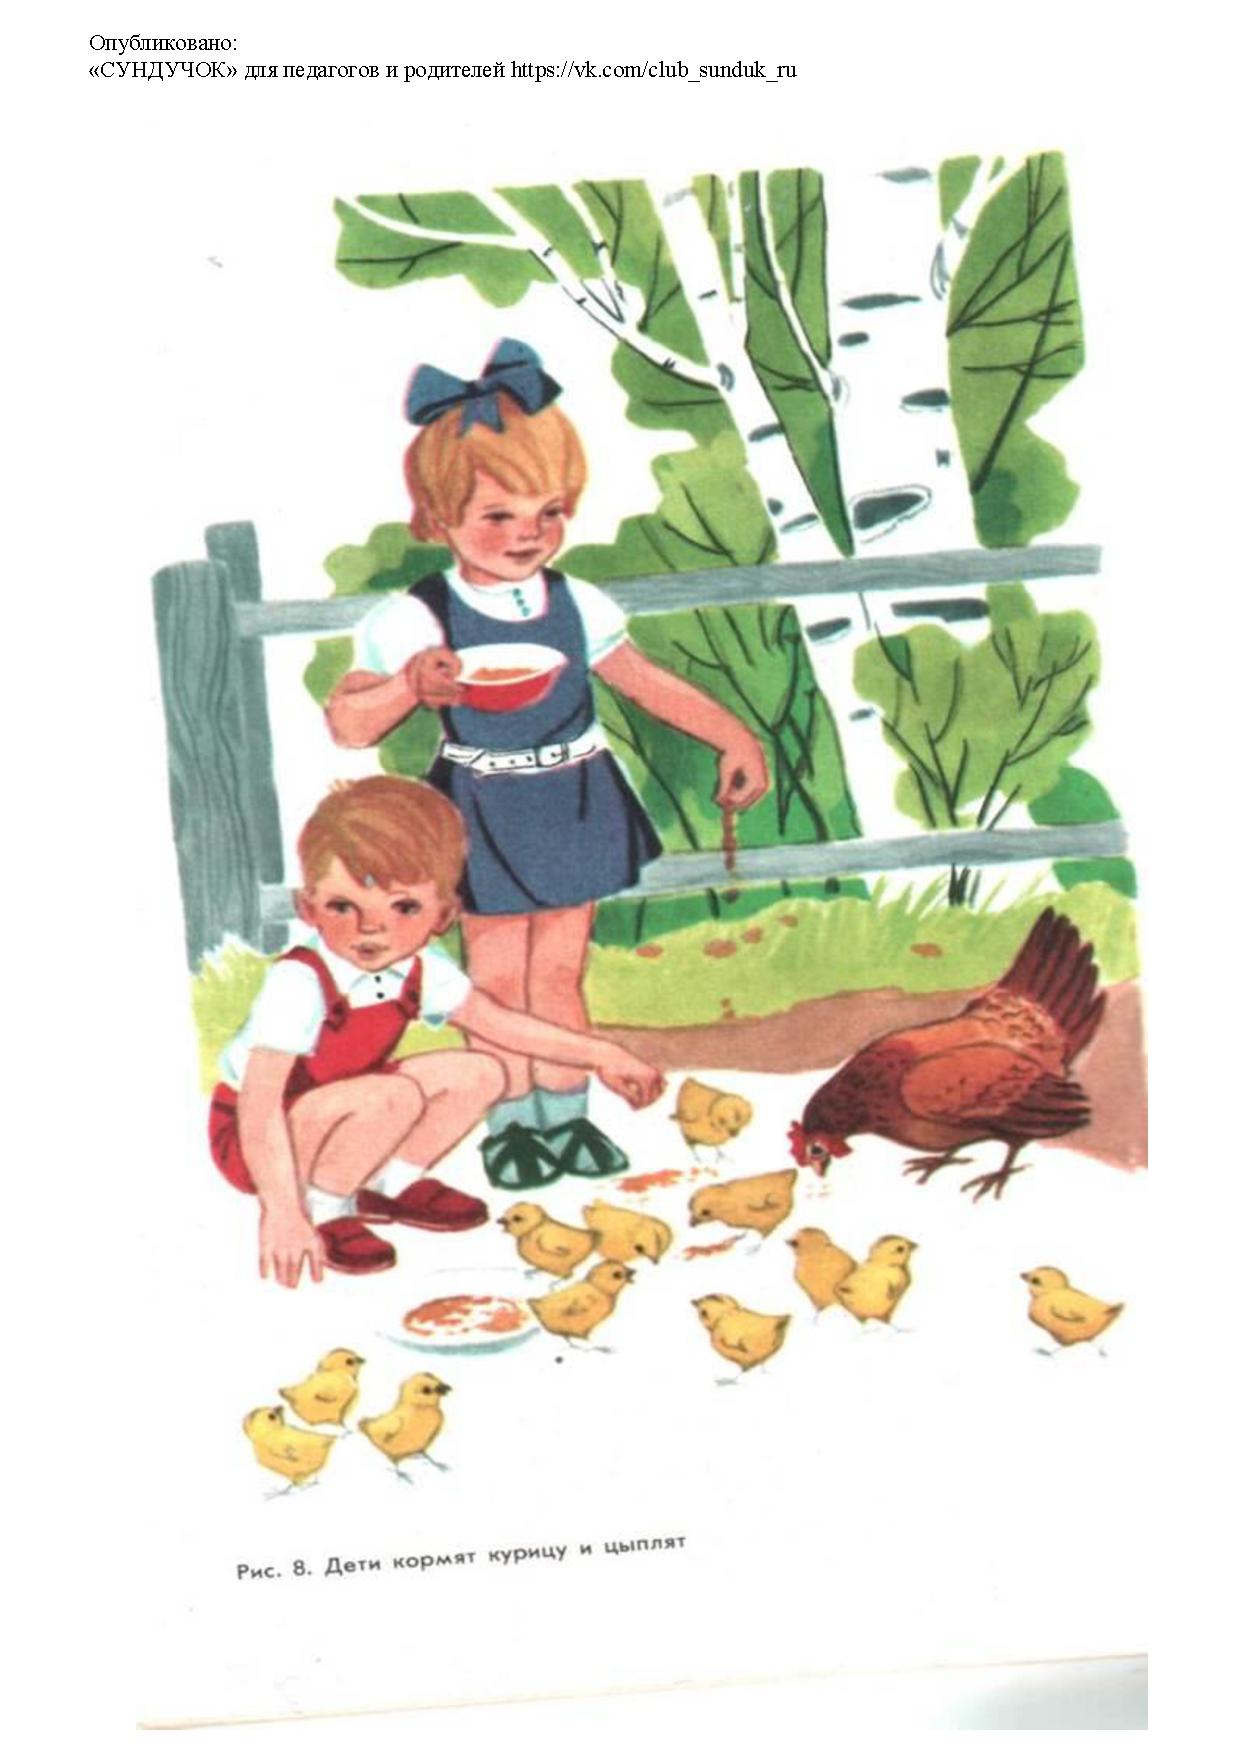 Иллюстрация дети кормят курицу и цыплят